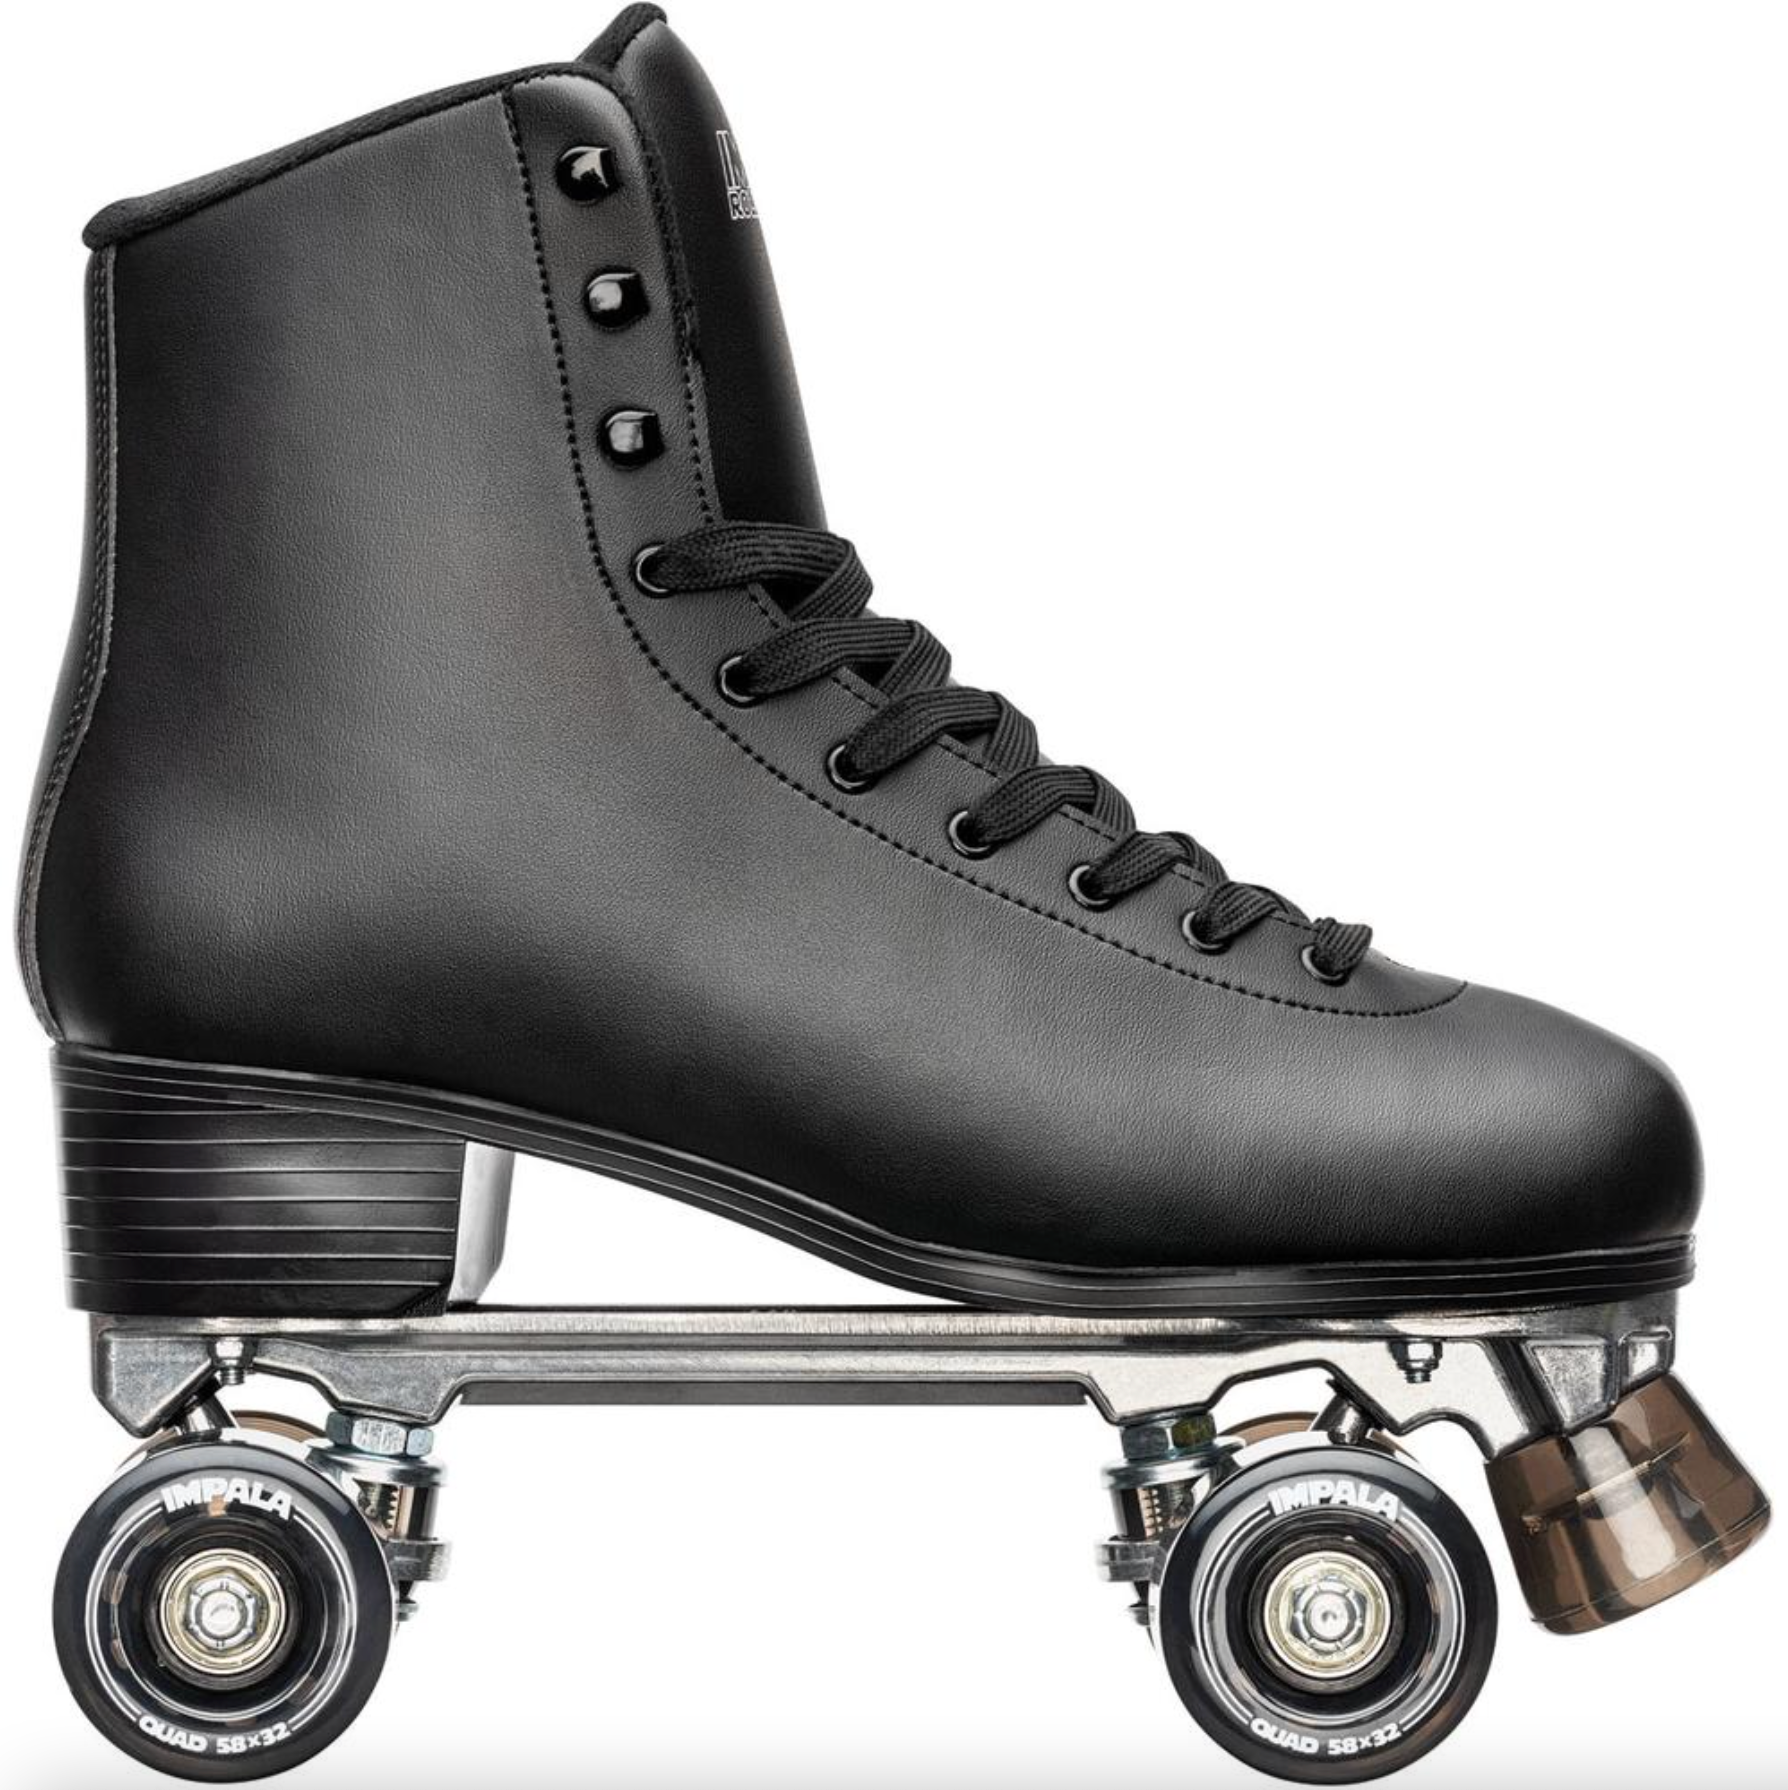 Rollerblades, Rollerblading, Inline Skates, Inline Skating, Skate Shops Near Me, Intuition Skate Shop, Roller Skates, Impala Black roller skates